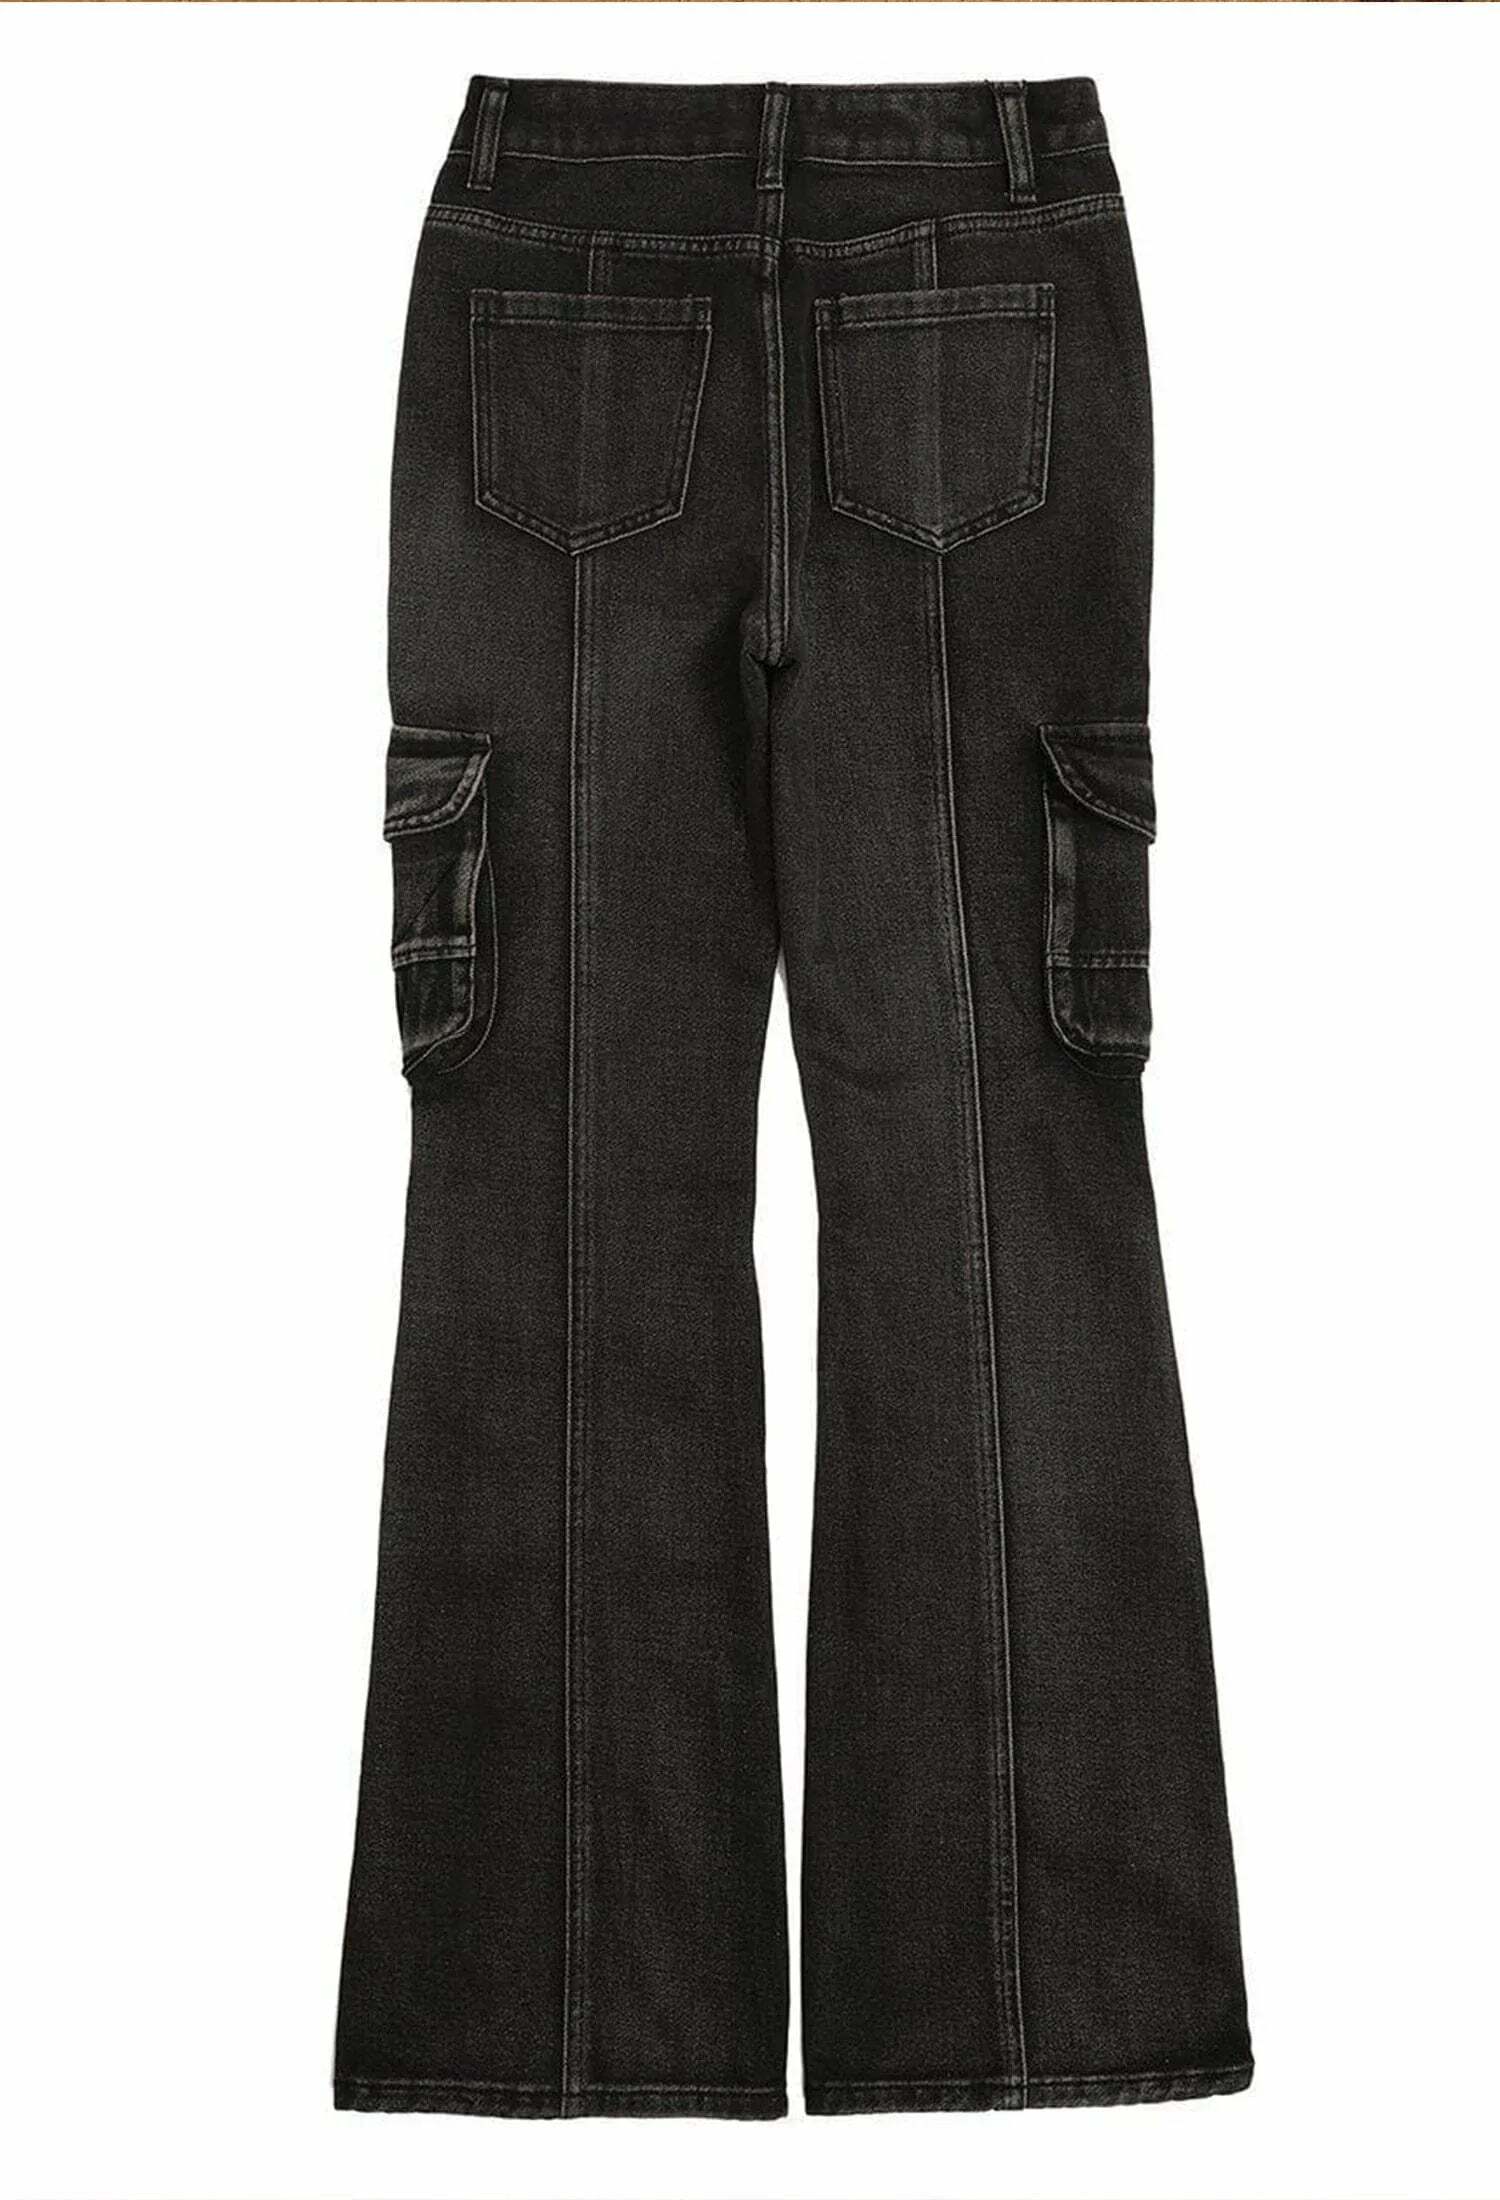 vintage wash slim fit jeans timeless streetwear essential 7260